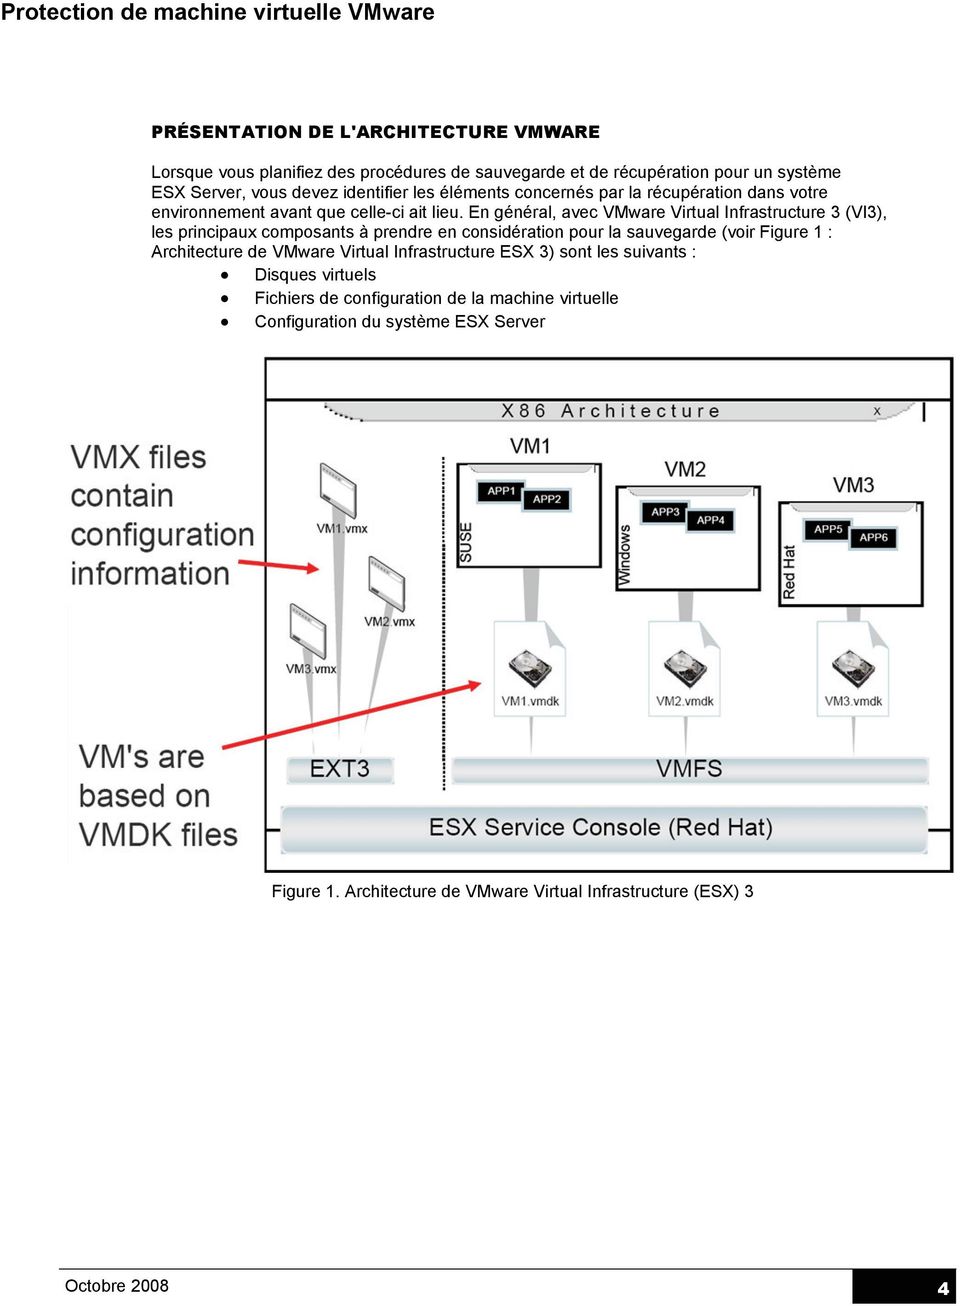 En général, avec VMware Virtual Infrastructure 3 (VI3), les principaux composants à prendre en considération pour la sauvegarde (voir Figure 1 : Architecture de